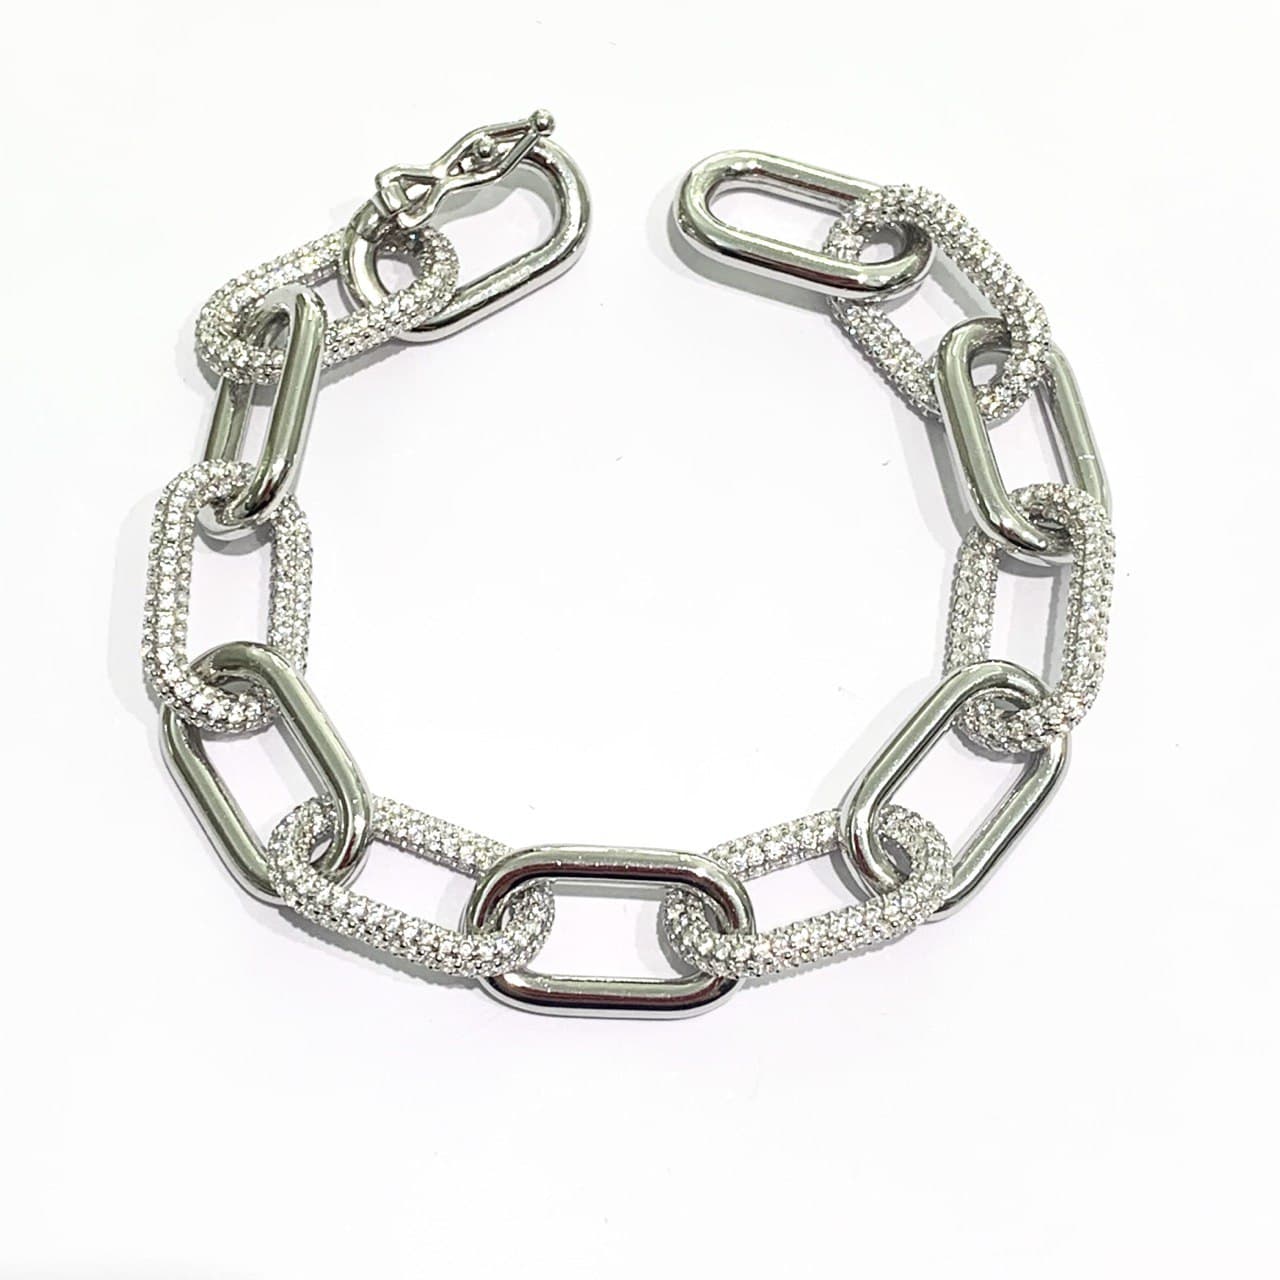 Bracciale in argento con anelli intrecciati tra di loro di cui alcuni ricoperti da zirconi.  Lunghezza massima 17,5 cm, con possibilità di chiuderlo anche negli altri anelli.  Larghezza anelli 1 cm.  Spessore 0,2 cm.